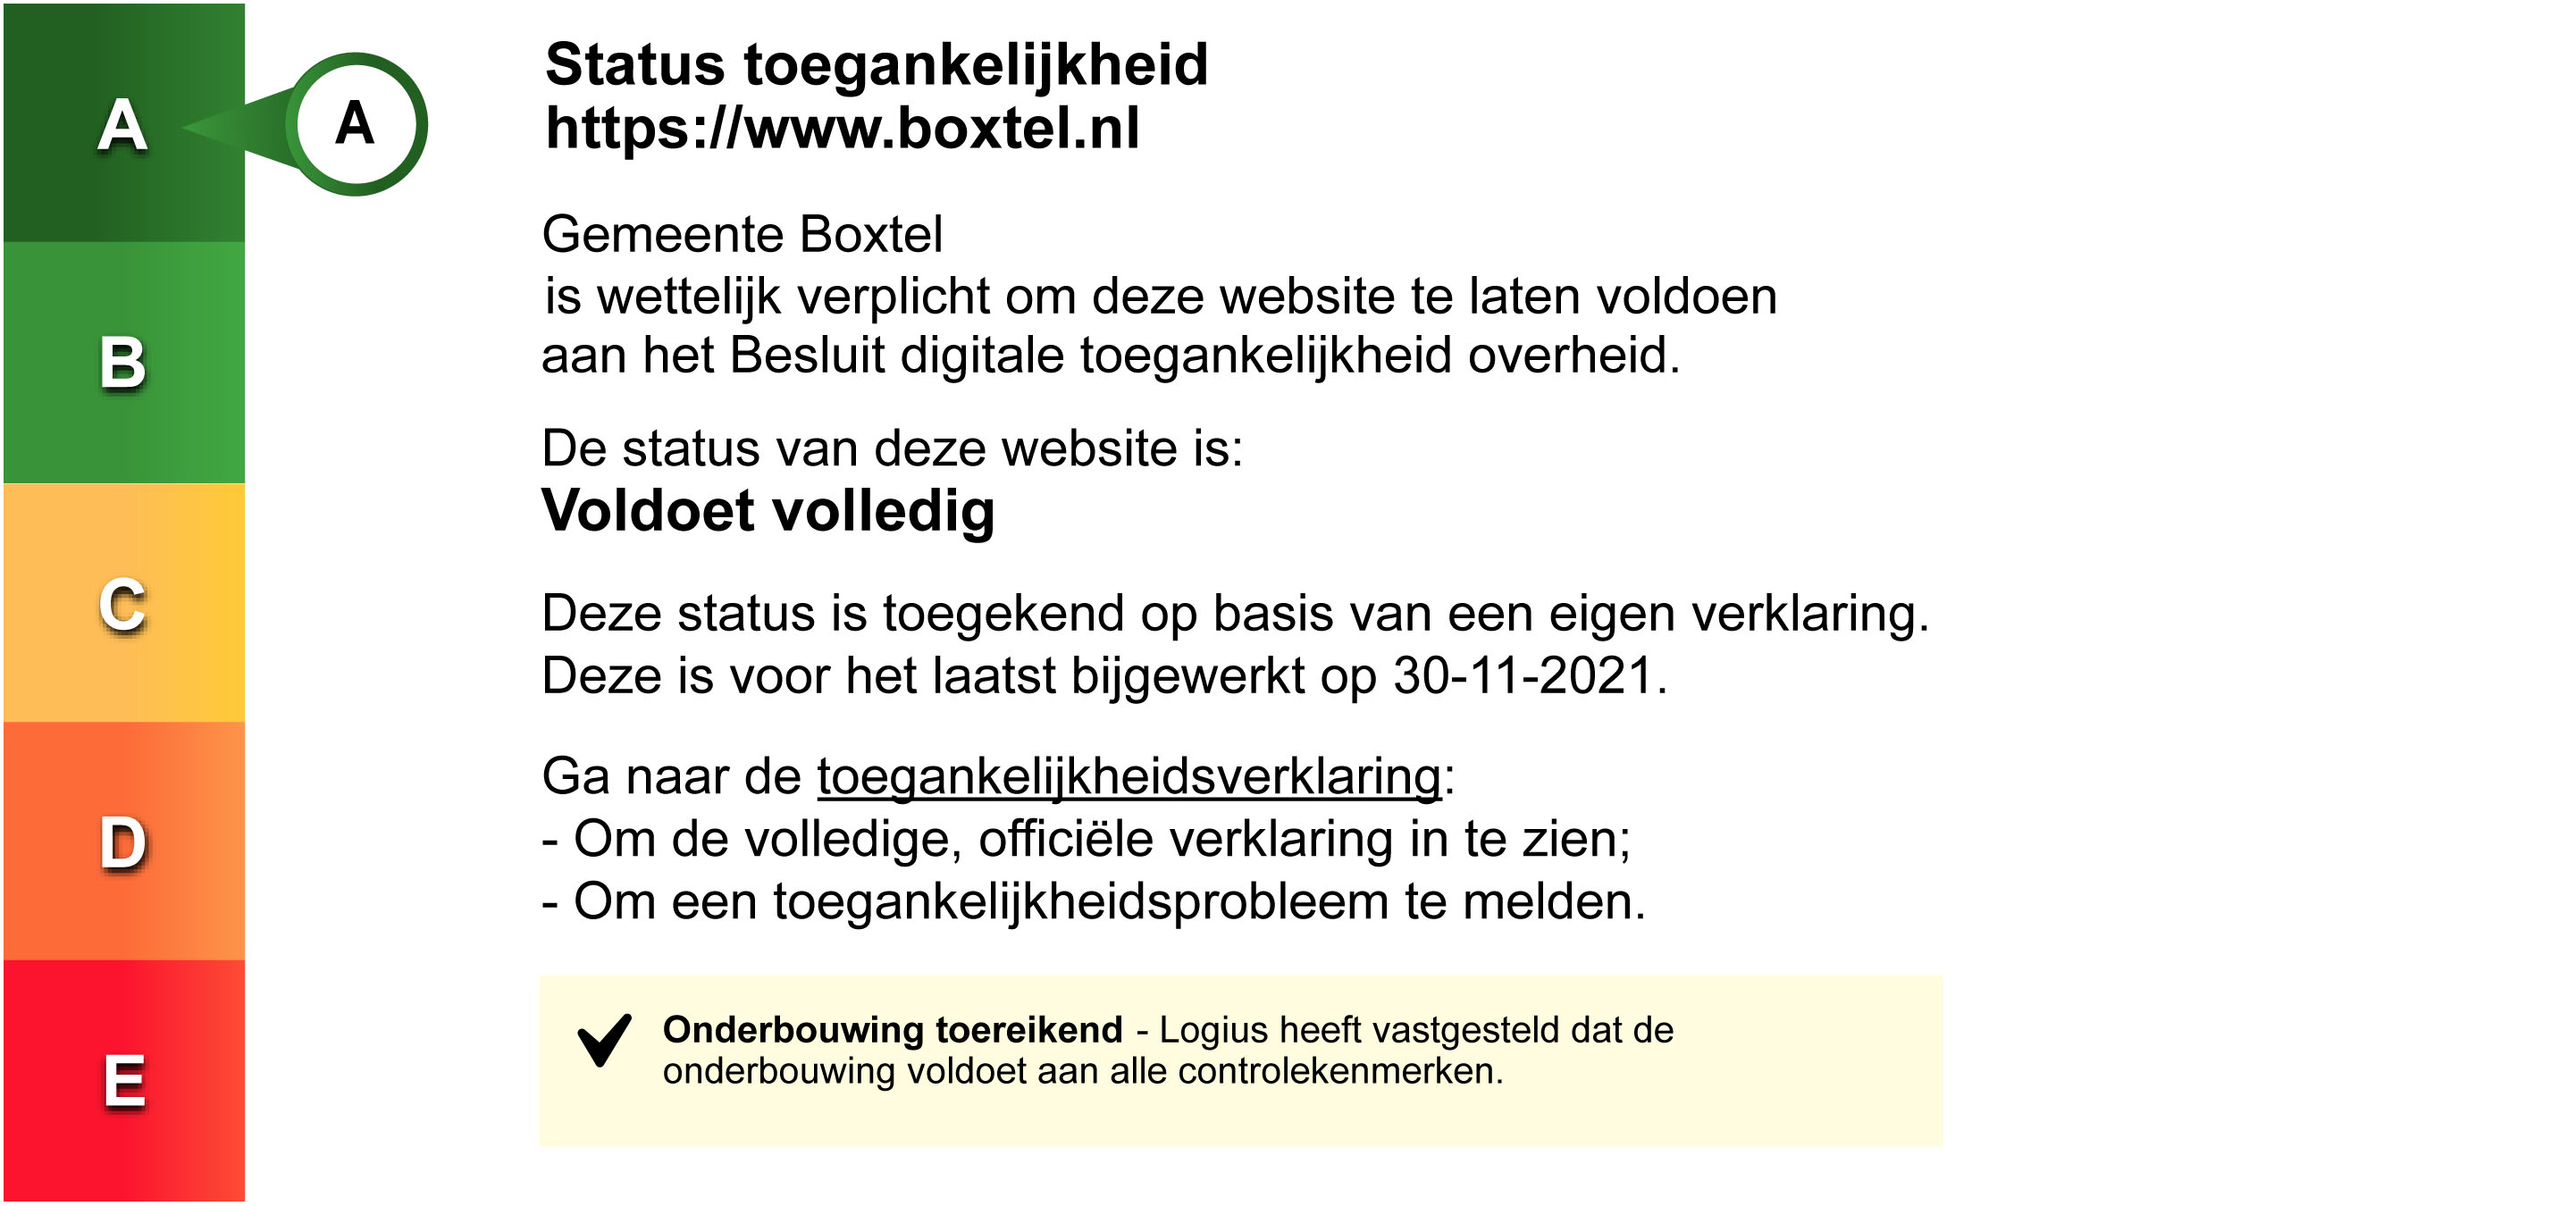 Status toegankelijkheidslabel van Gemeente Sint-Michielsgestel. Volg de link voor de volledige toegankelijkheidsverklaring.